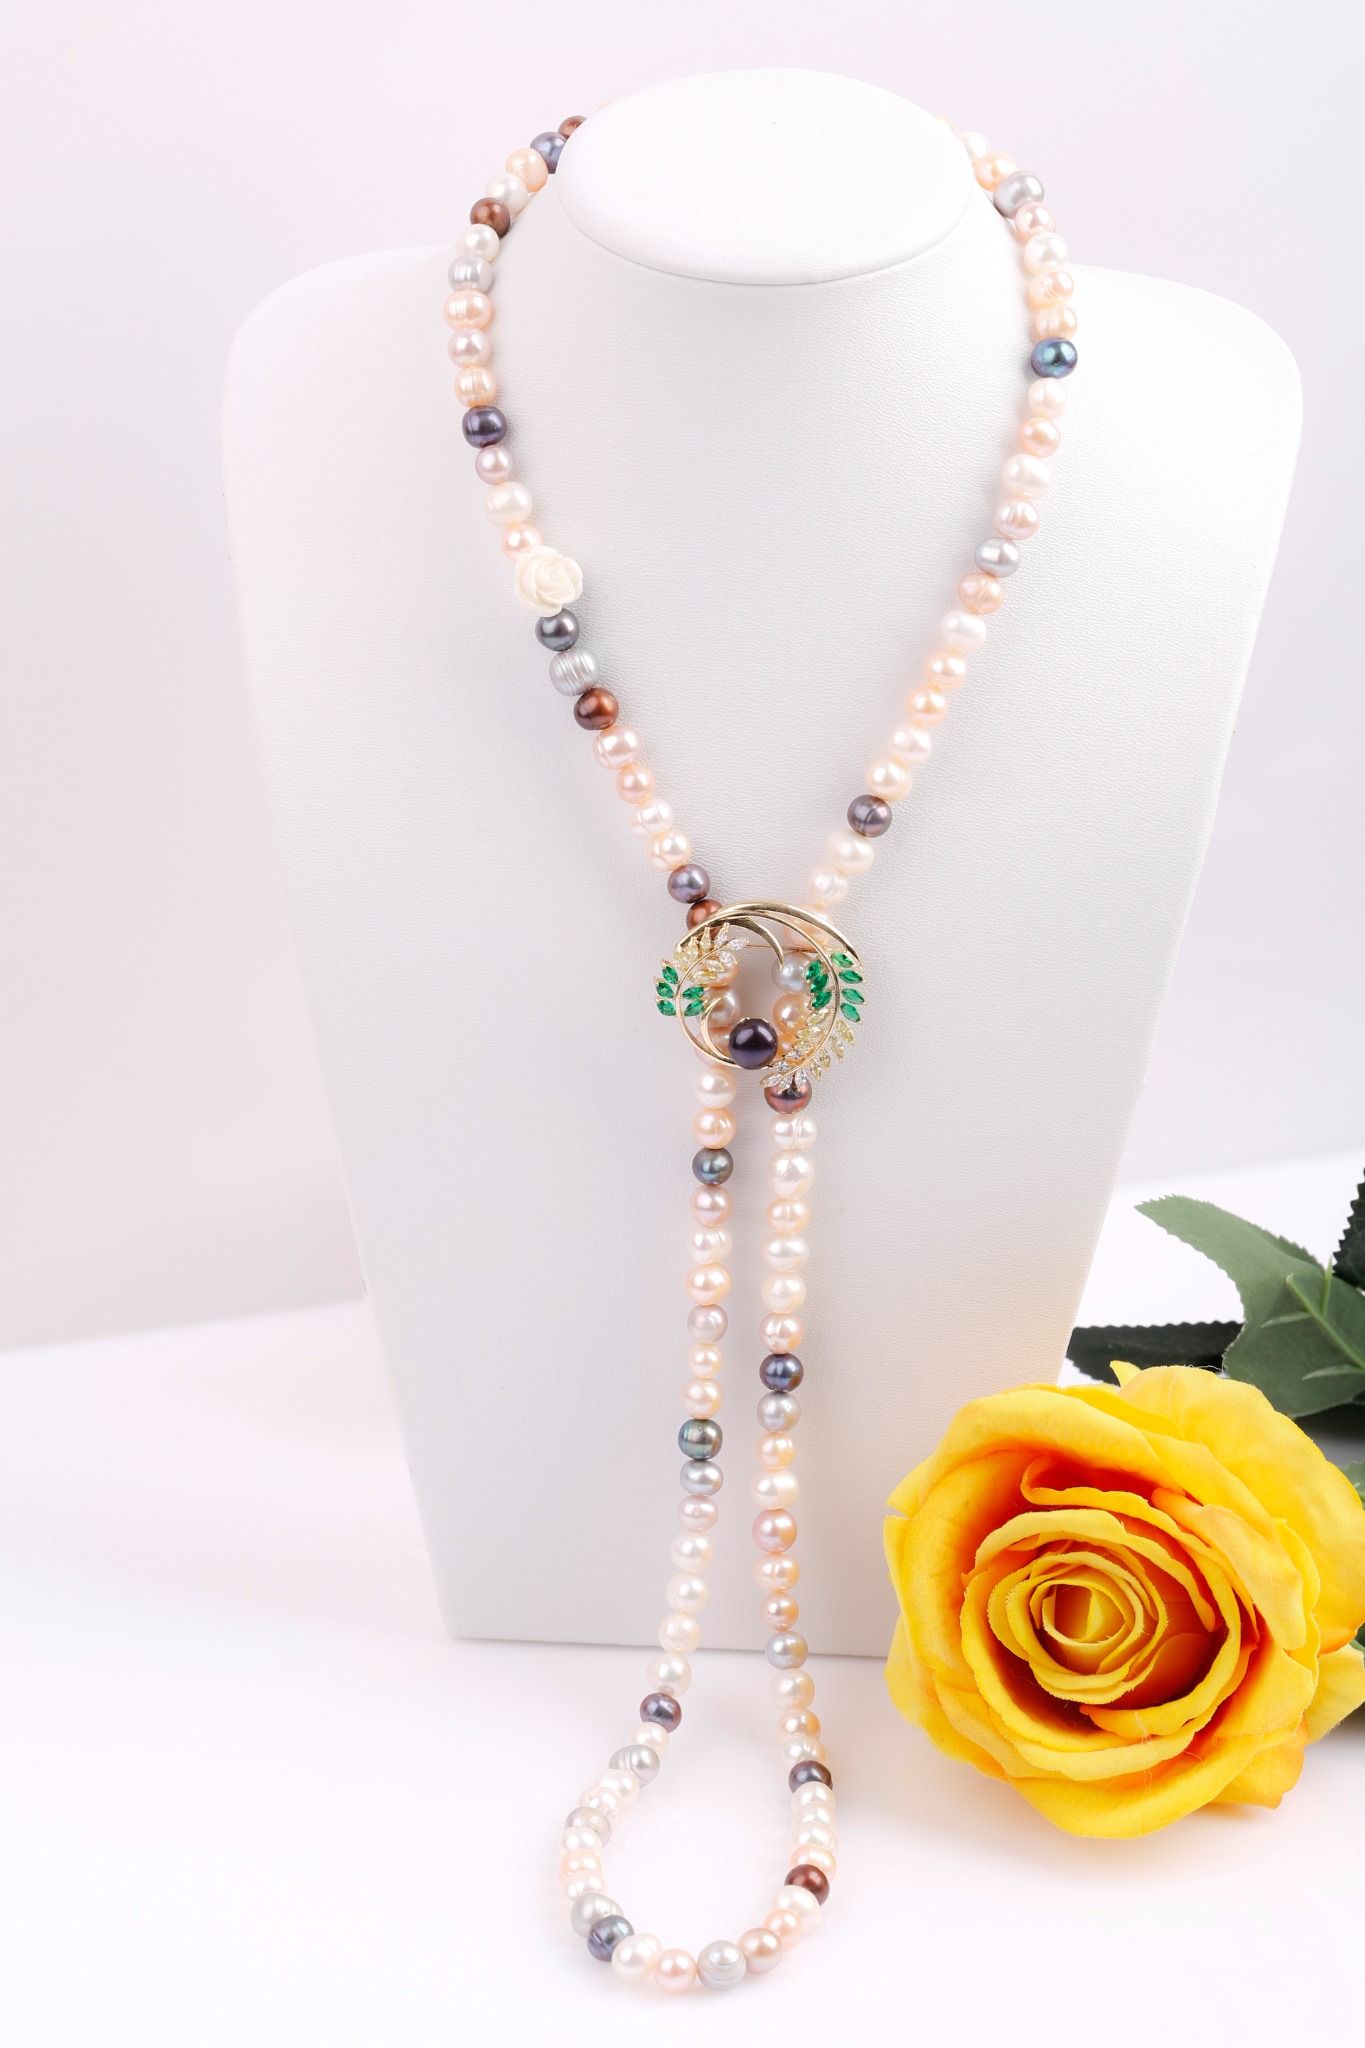  Vòng cổ Ngọc trai đa màu kết hợp Cài áo phong cách mới Opal 